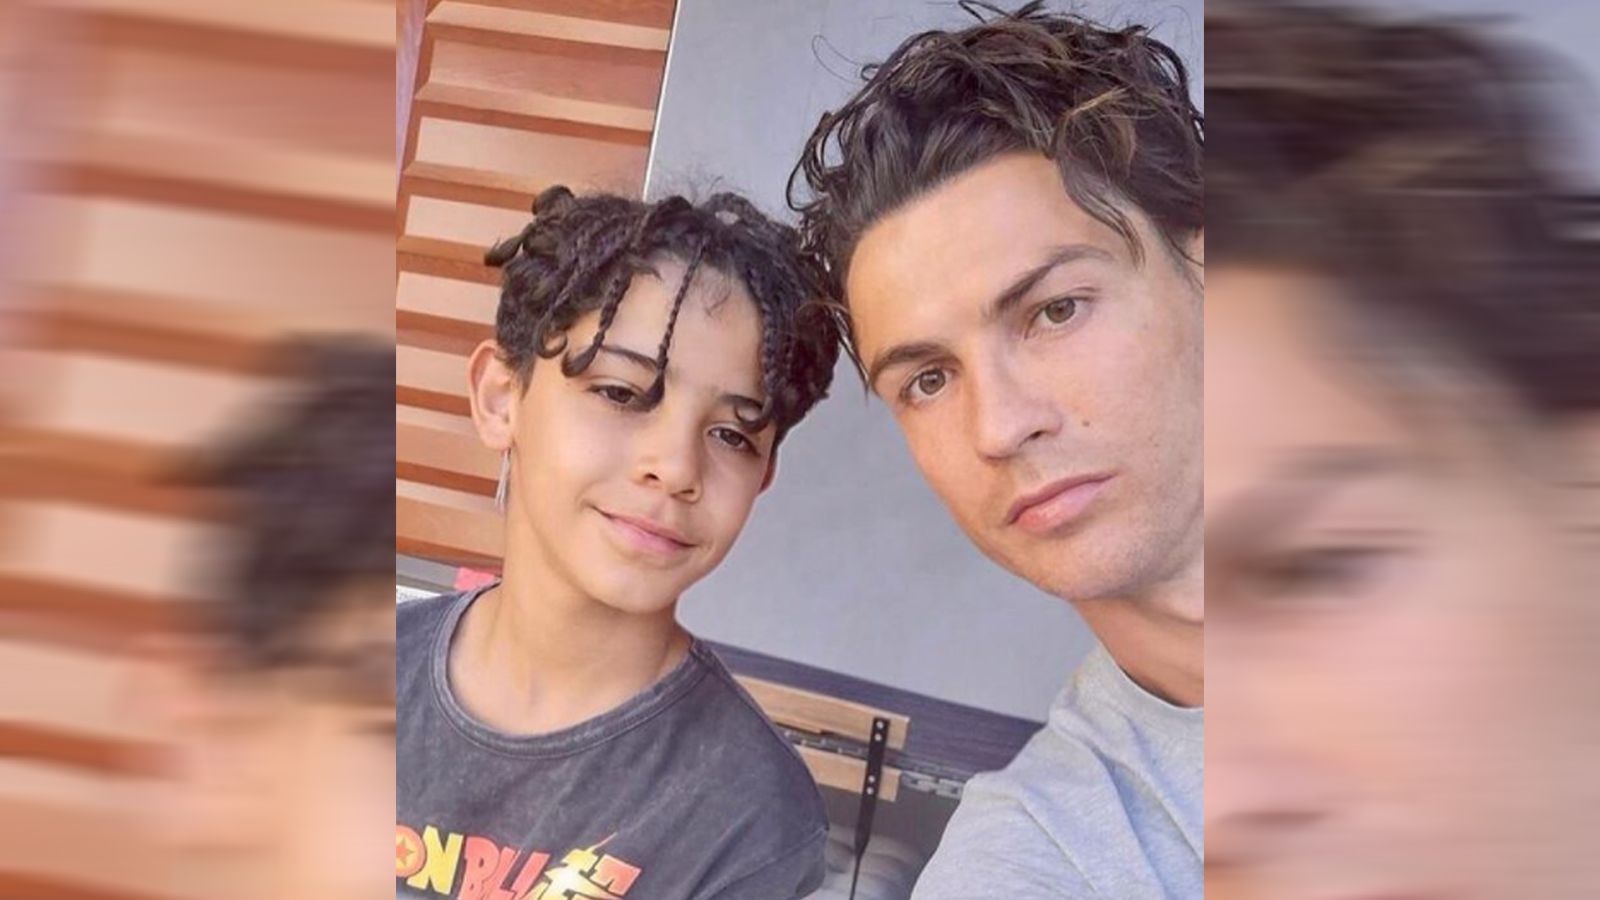 
                <strong>Cristiano Ronaldo im Boyband-Look</strong><br>
                Vater und Sohn könnten mit diesen Frisuren gut und gerne auch eine Boyband gründen oder einer beitreten. Die Groupies würde wohl nicht mehr aus dem Kreischen herauskommen.
              